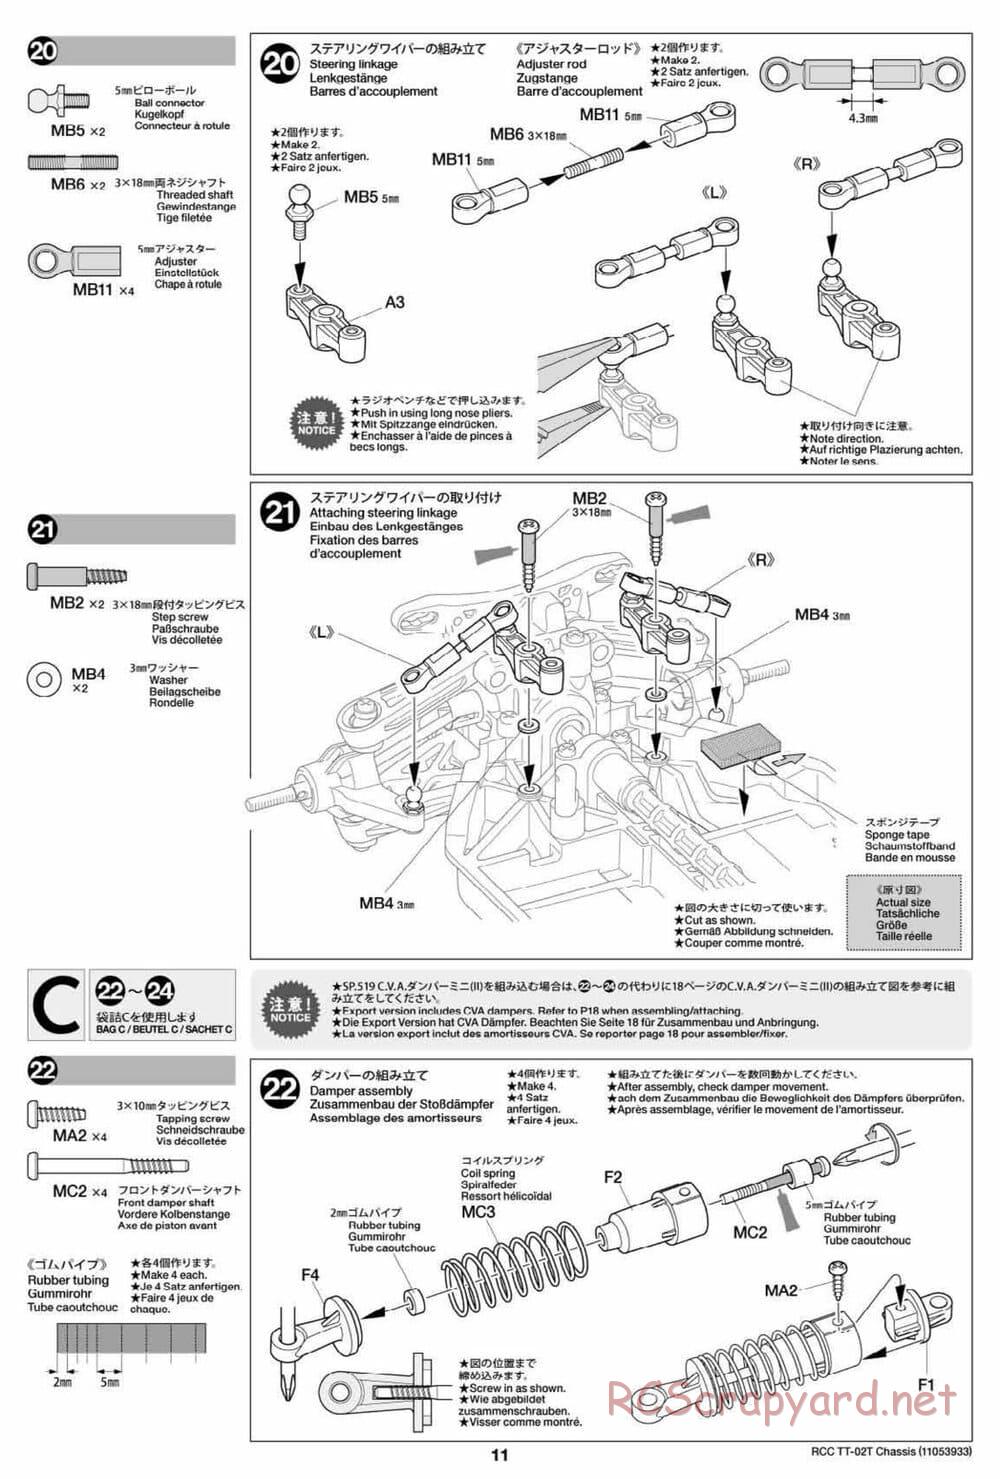 Tamiya - TT-02T Chassis - Manual - Page 12